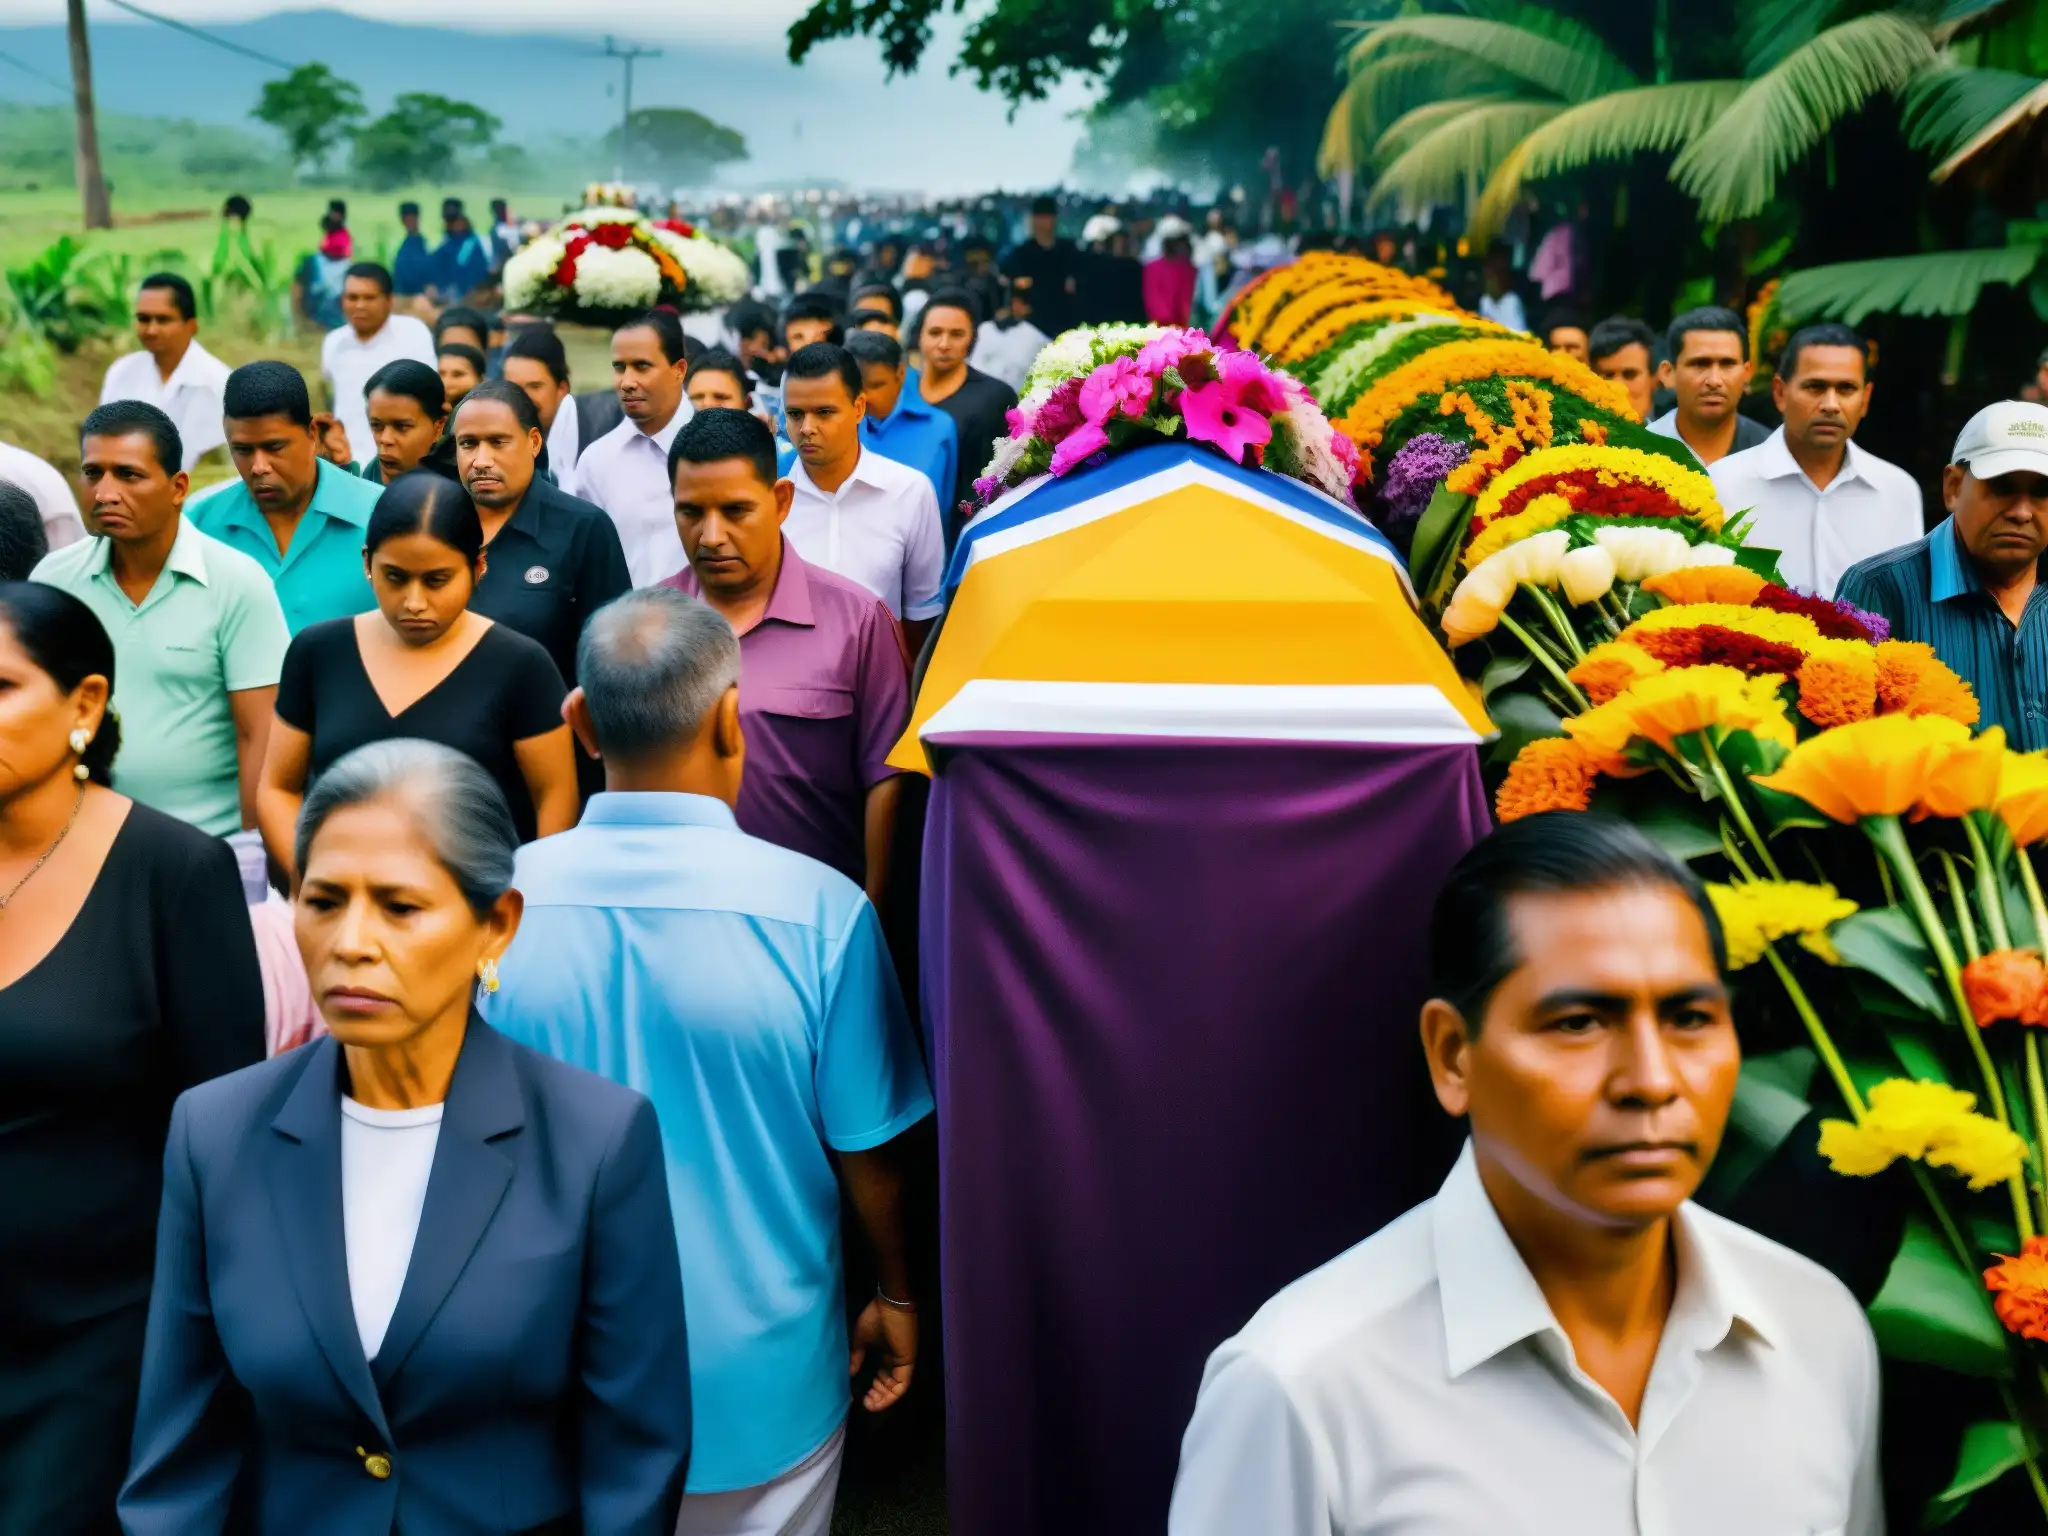 Procesión fúnebre en Centroamérica, con rostros serios, colores vibrantes de los féretros y flores, y la comunidad unida